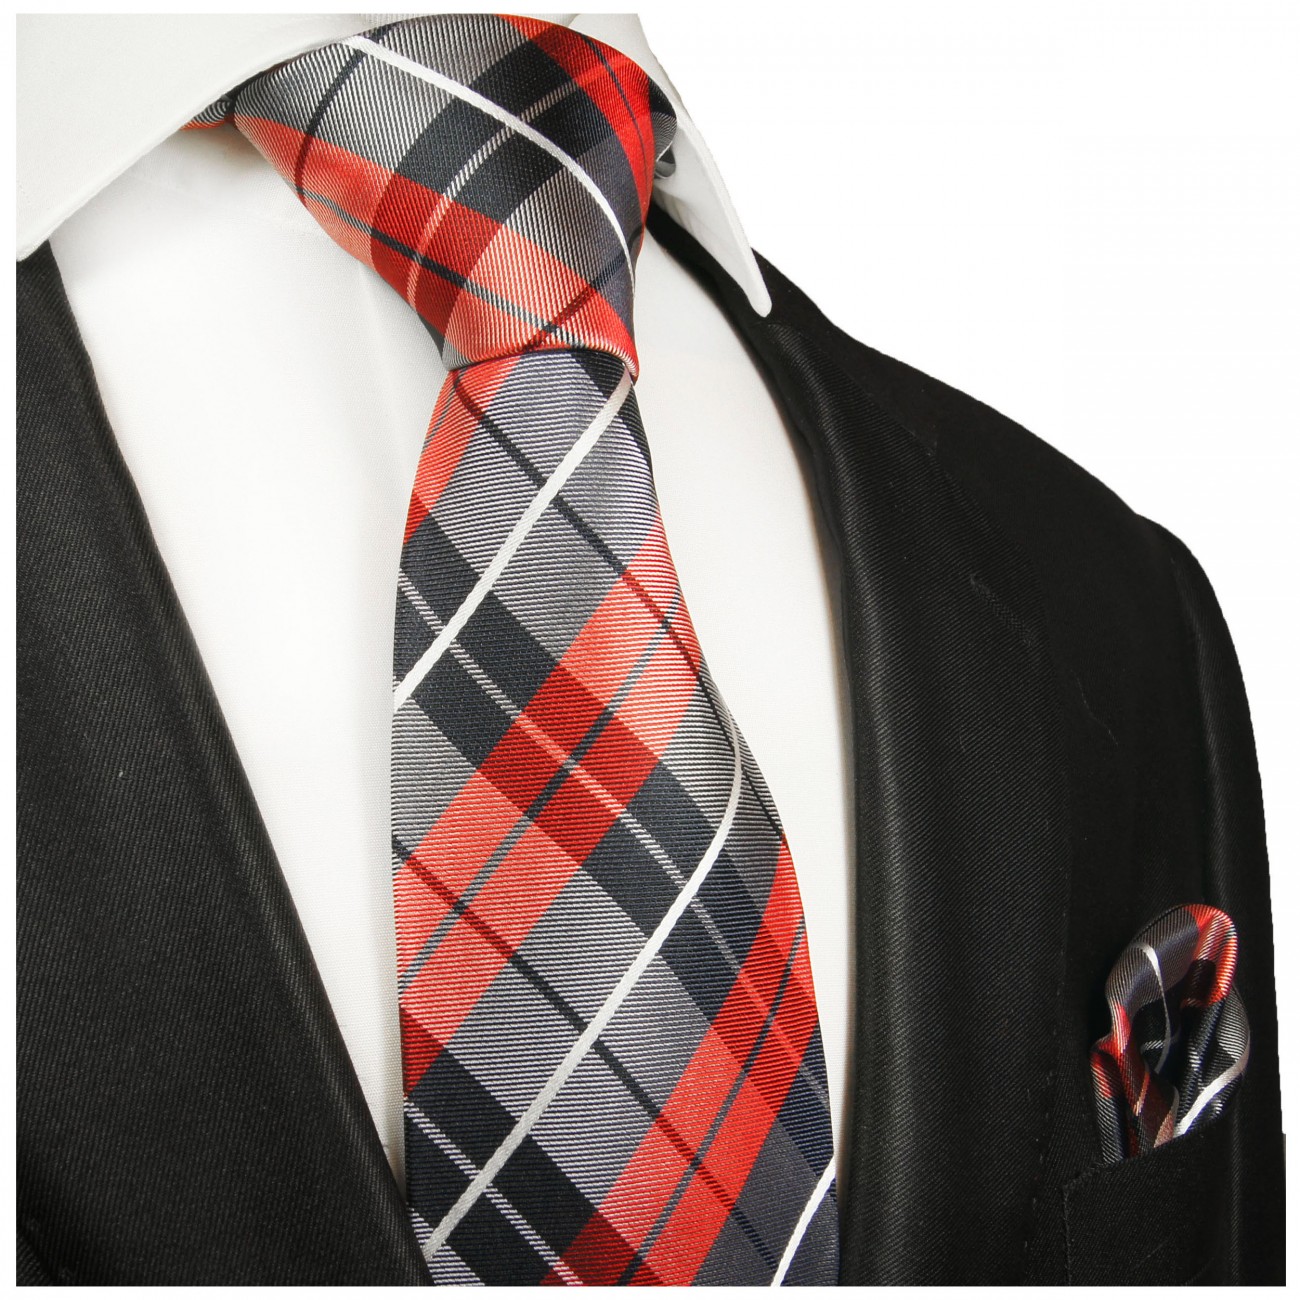 Extra lange Krawatte 165cm - Krawatte rot blau Schottenmuster